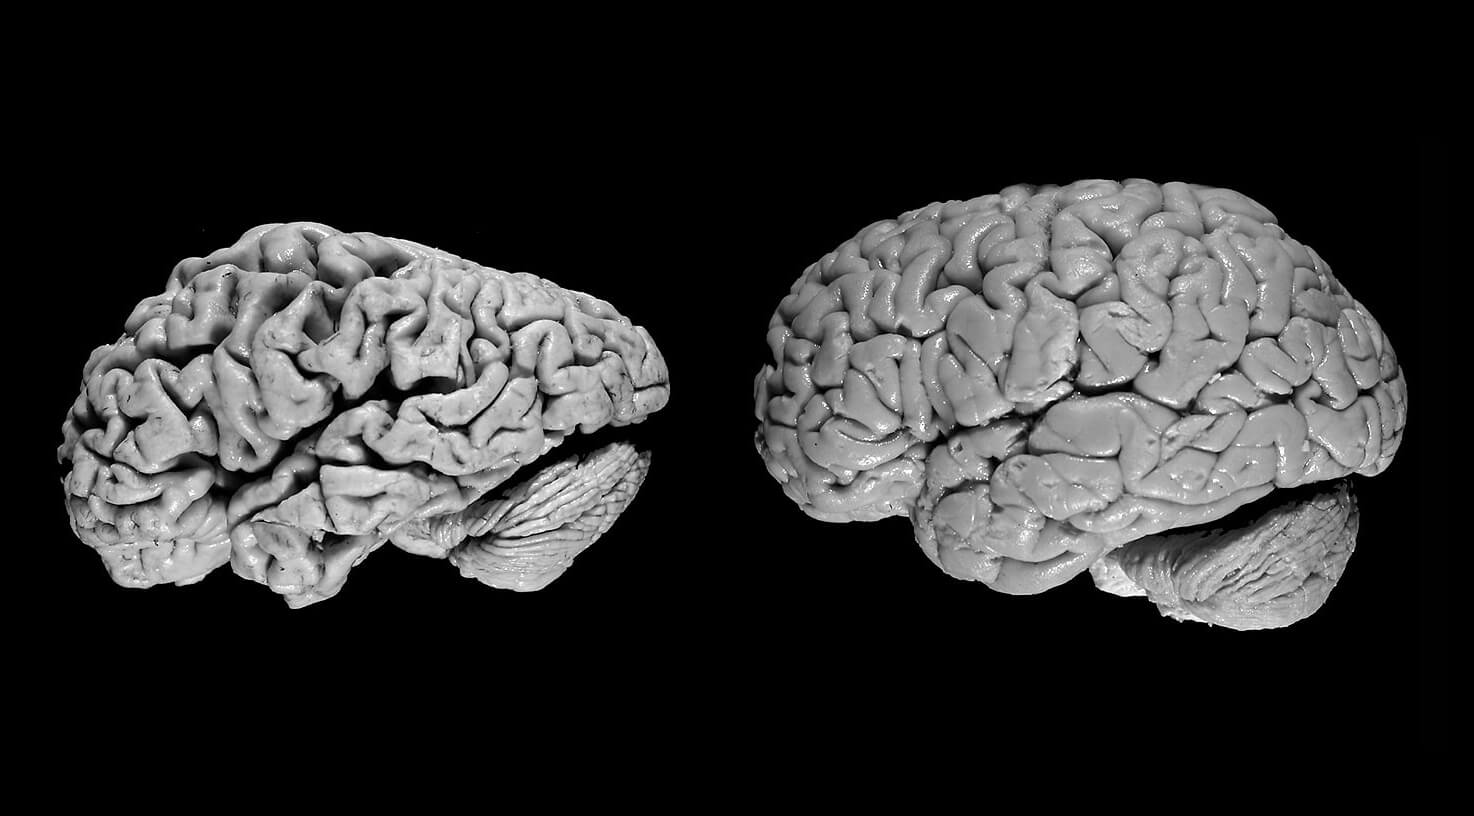 Снижение риска развития деменции. Мозг человека с деменцией (слева) и здорового человека (справа). Изображение: lninstitute.org. Фото.